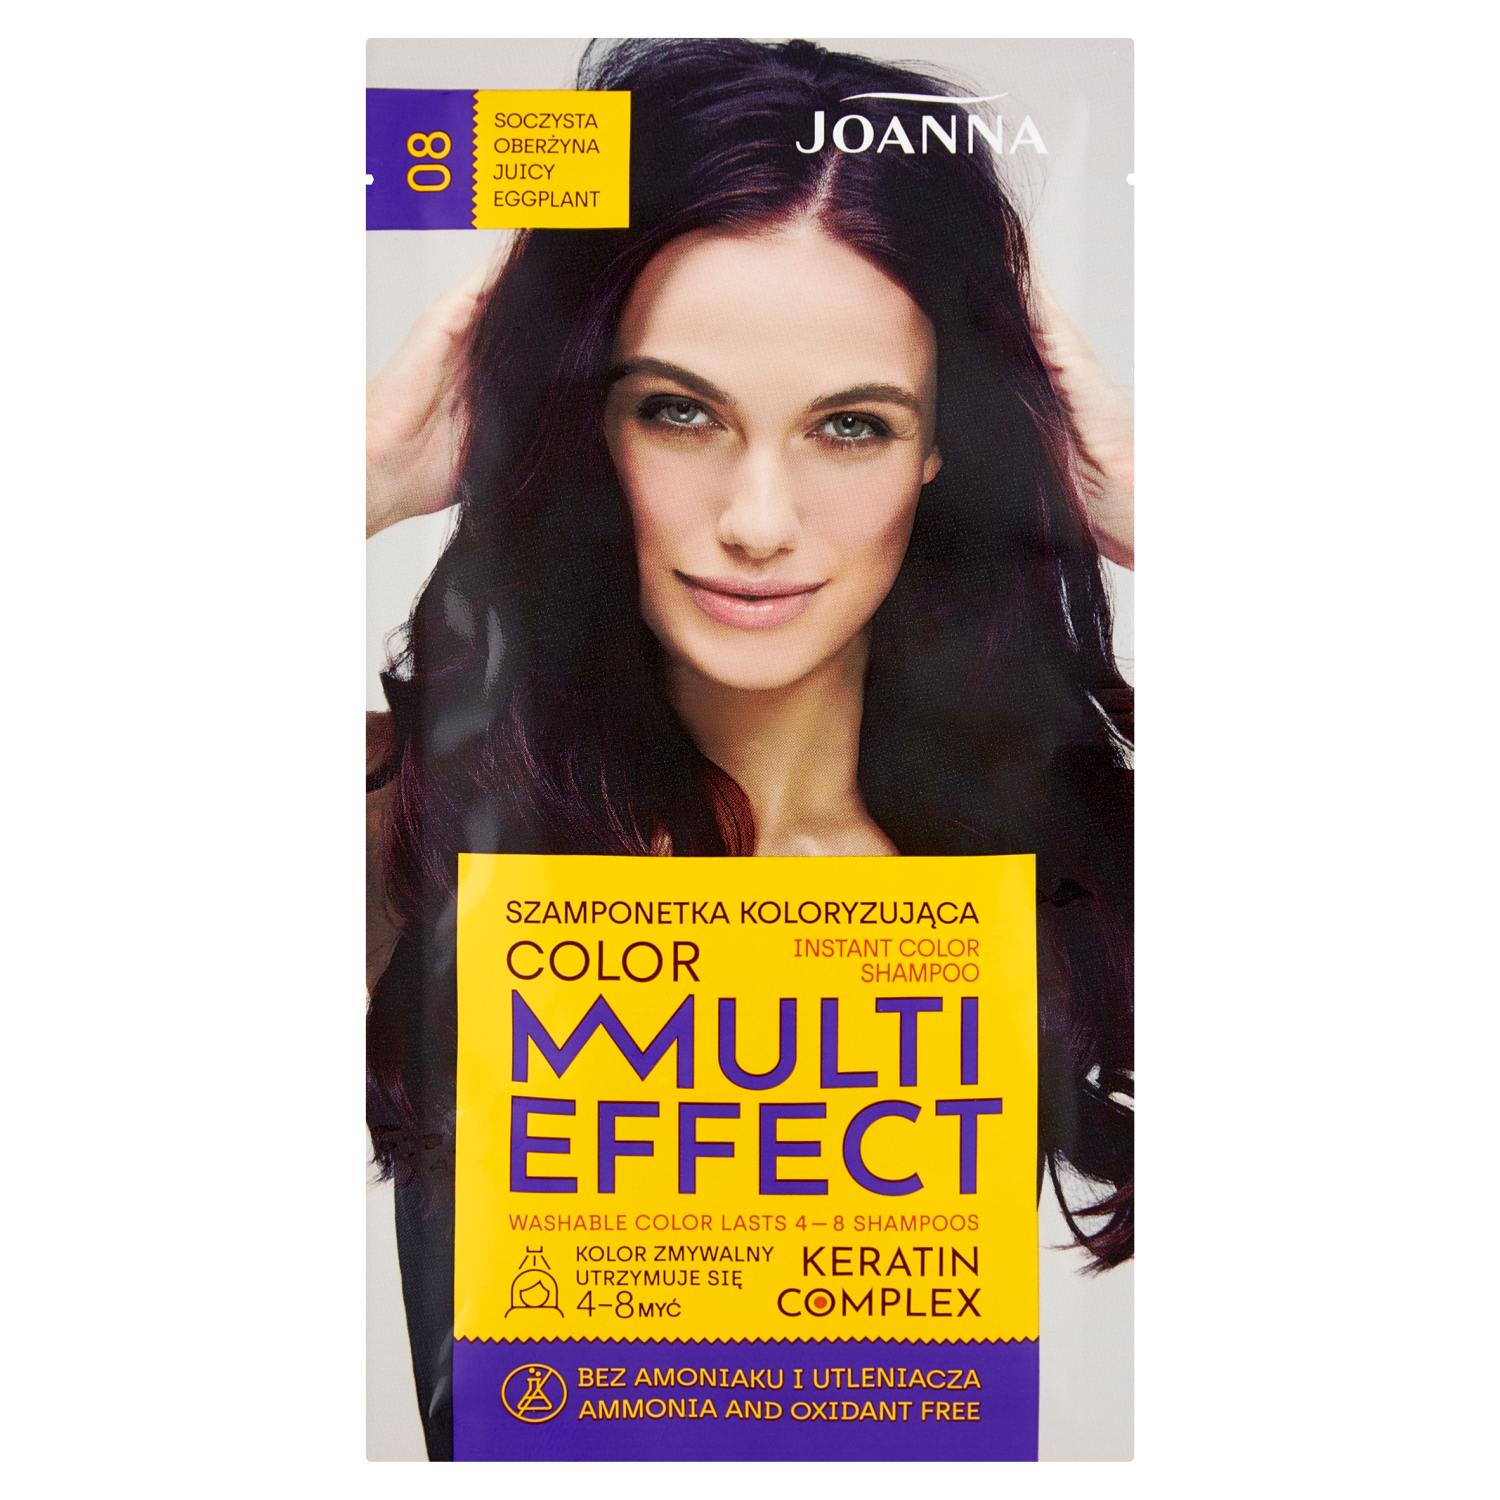 Joanna Multi Effect шампунь-краска для волос 08 сочный баклажан, 1 упаковка